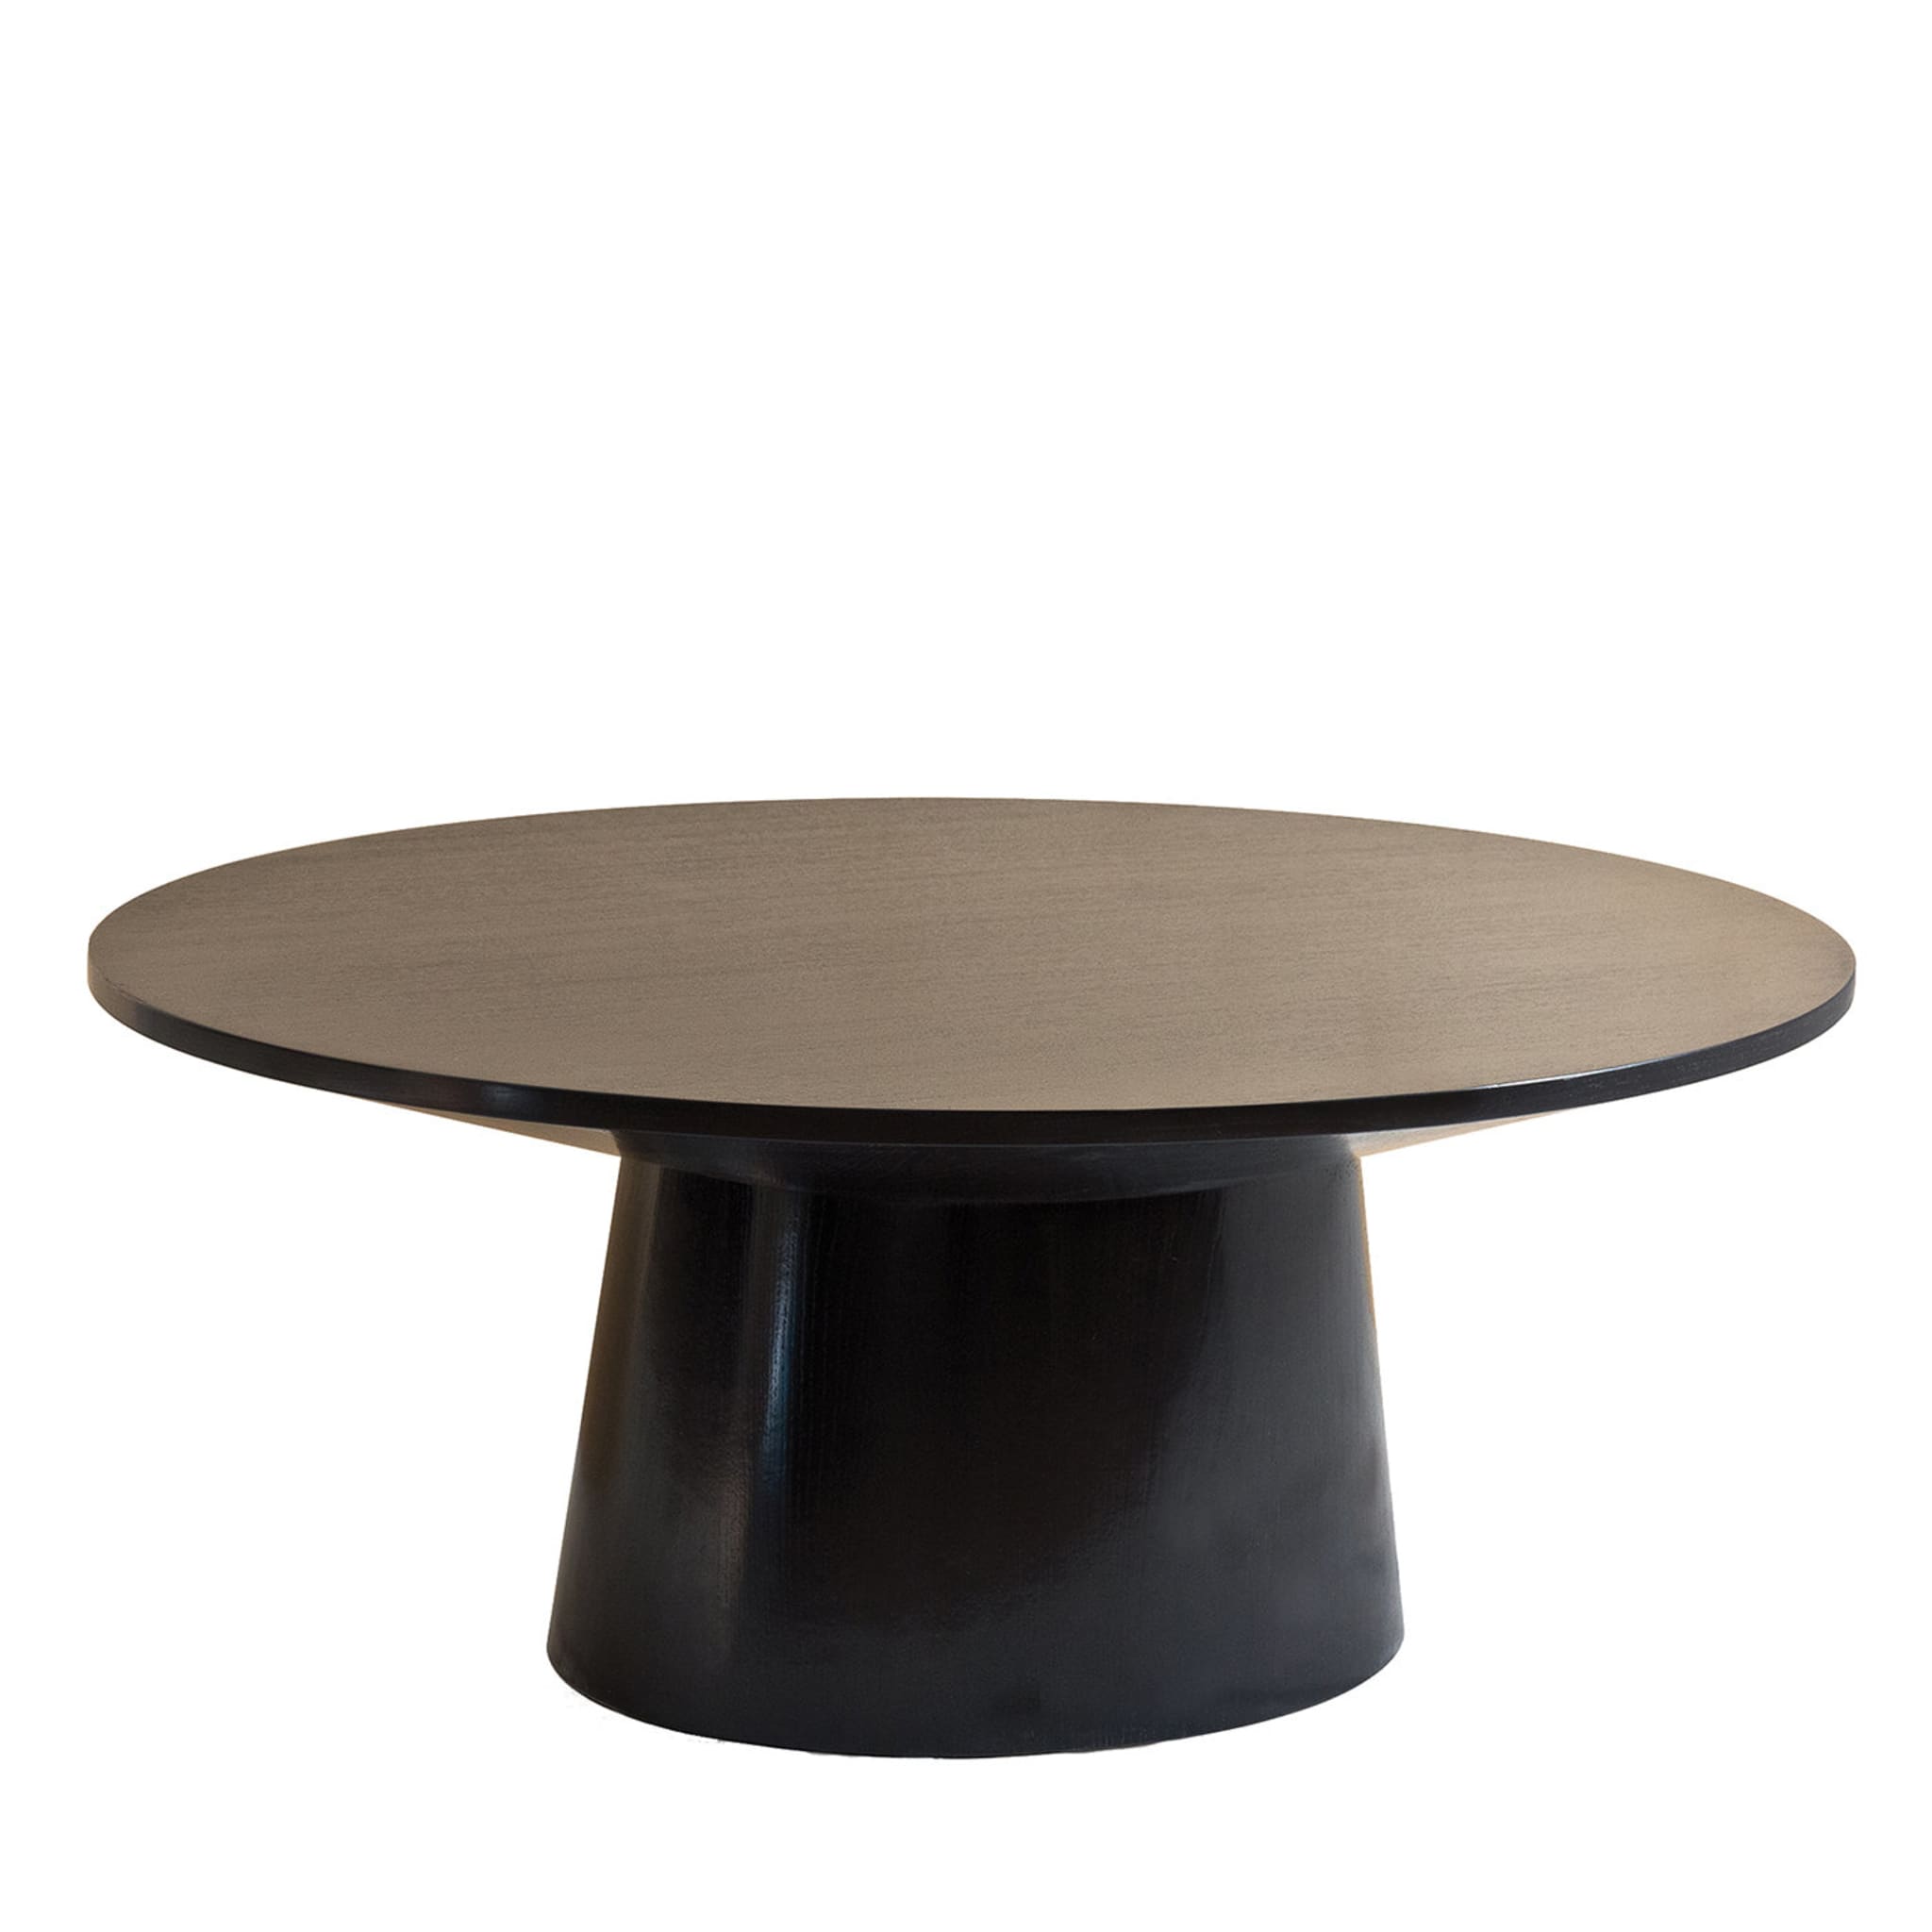 Table basse ovale en chêne teinté café - Vue principale